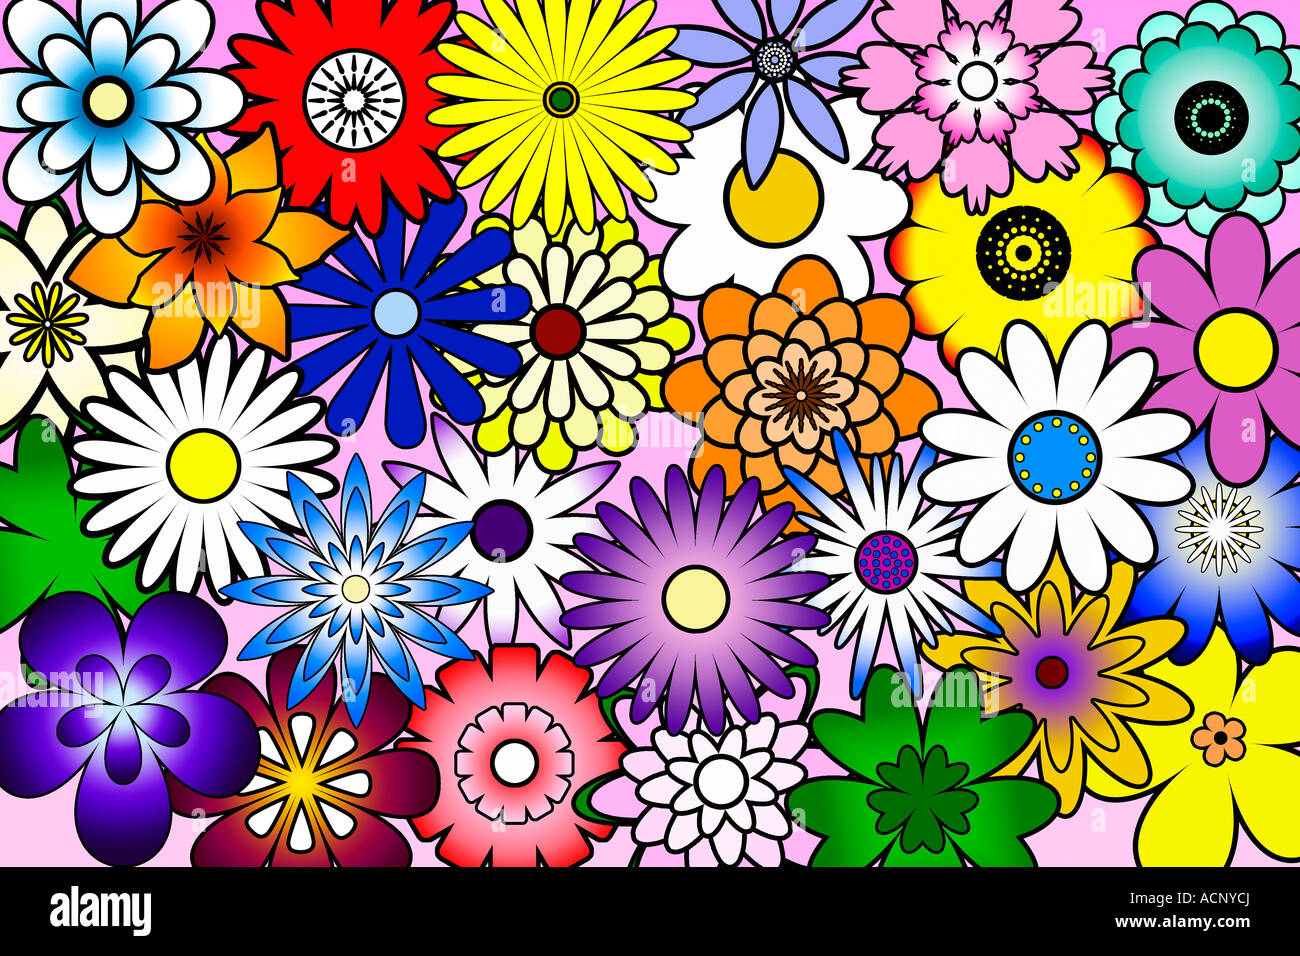 Des formes de fleurs stylisées multicolores sur fond rose Banque D'Images